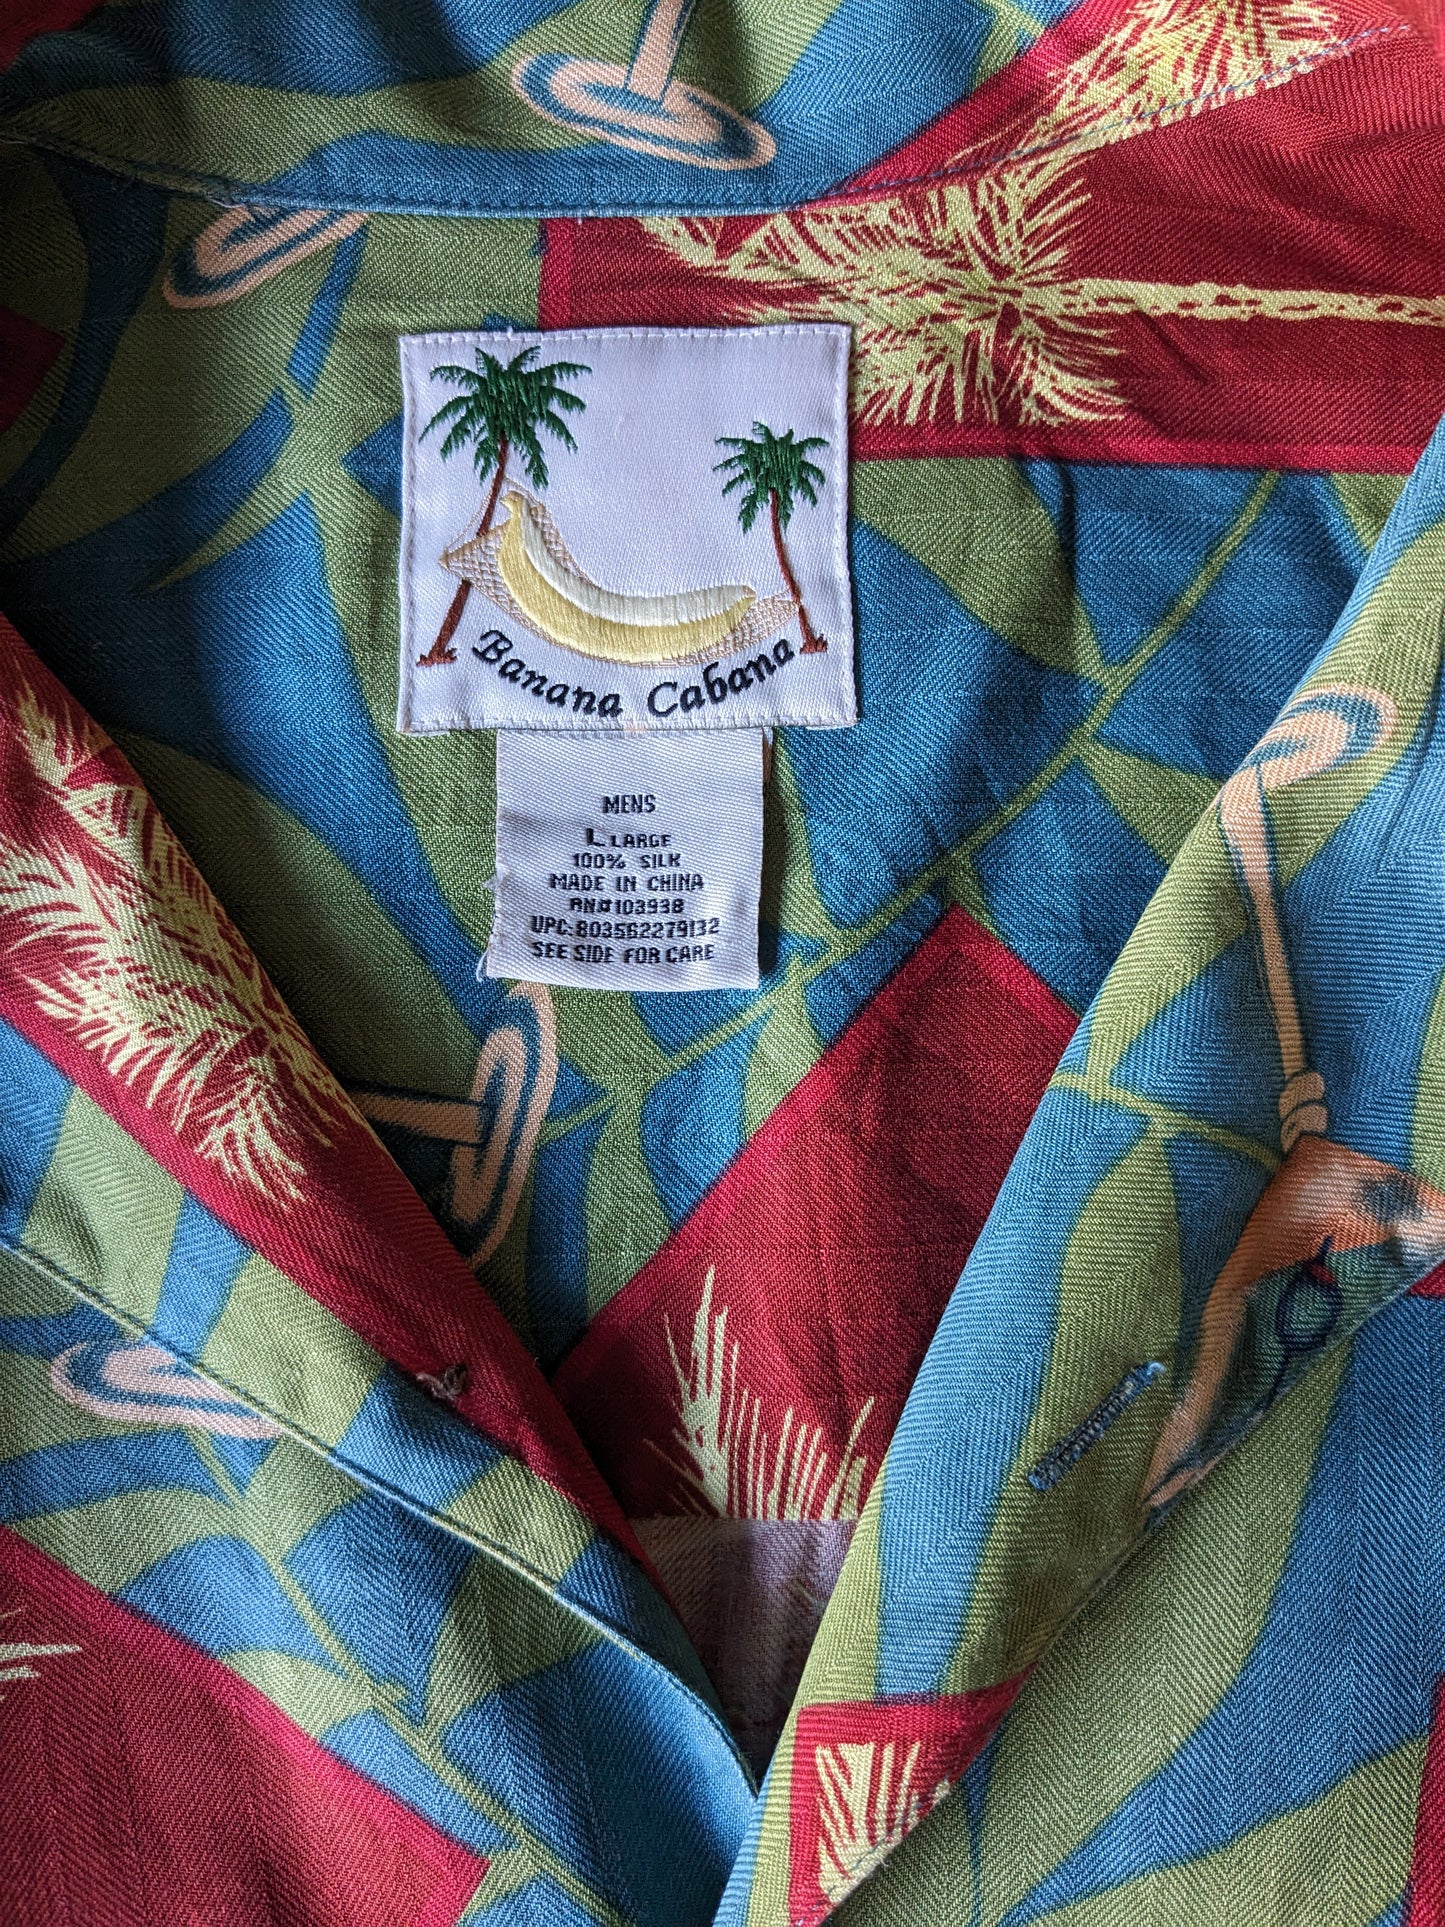 Banana Cabana Casta corta hawaii originale. Stampa blu verde rosso. Taglia L / XL.